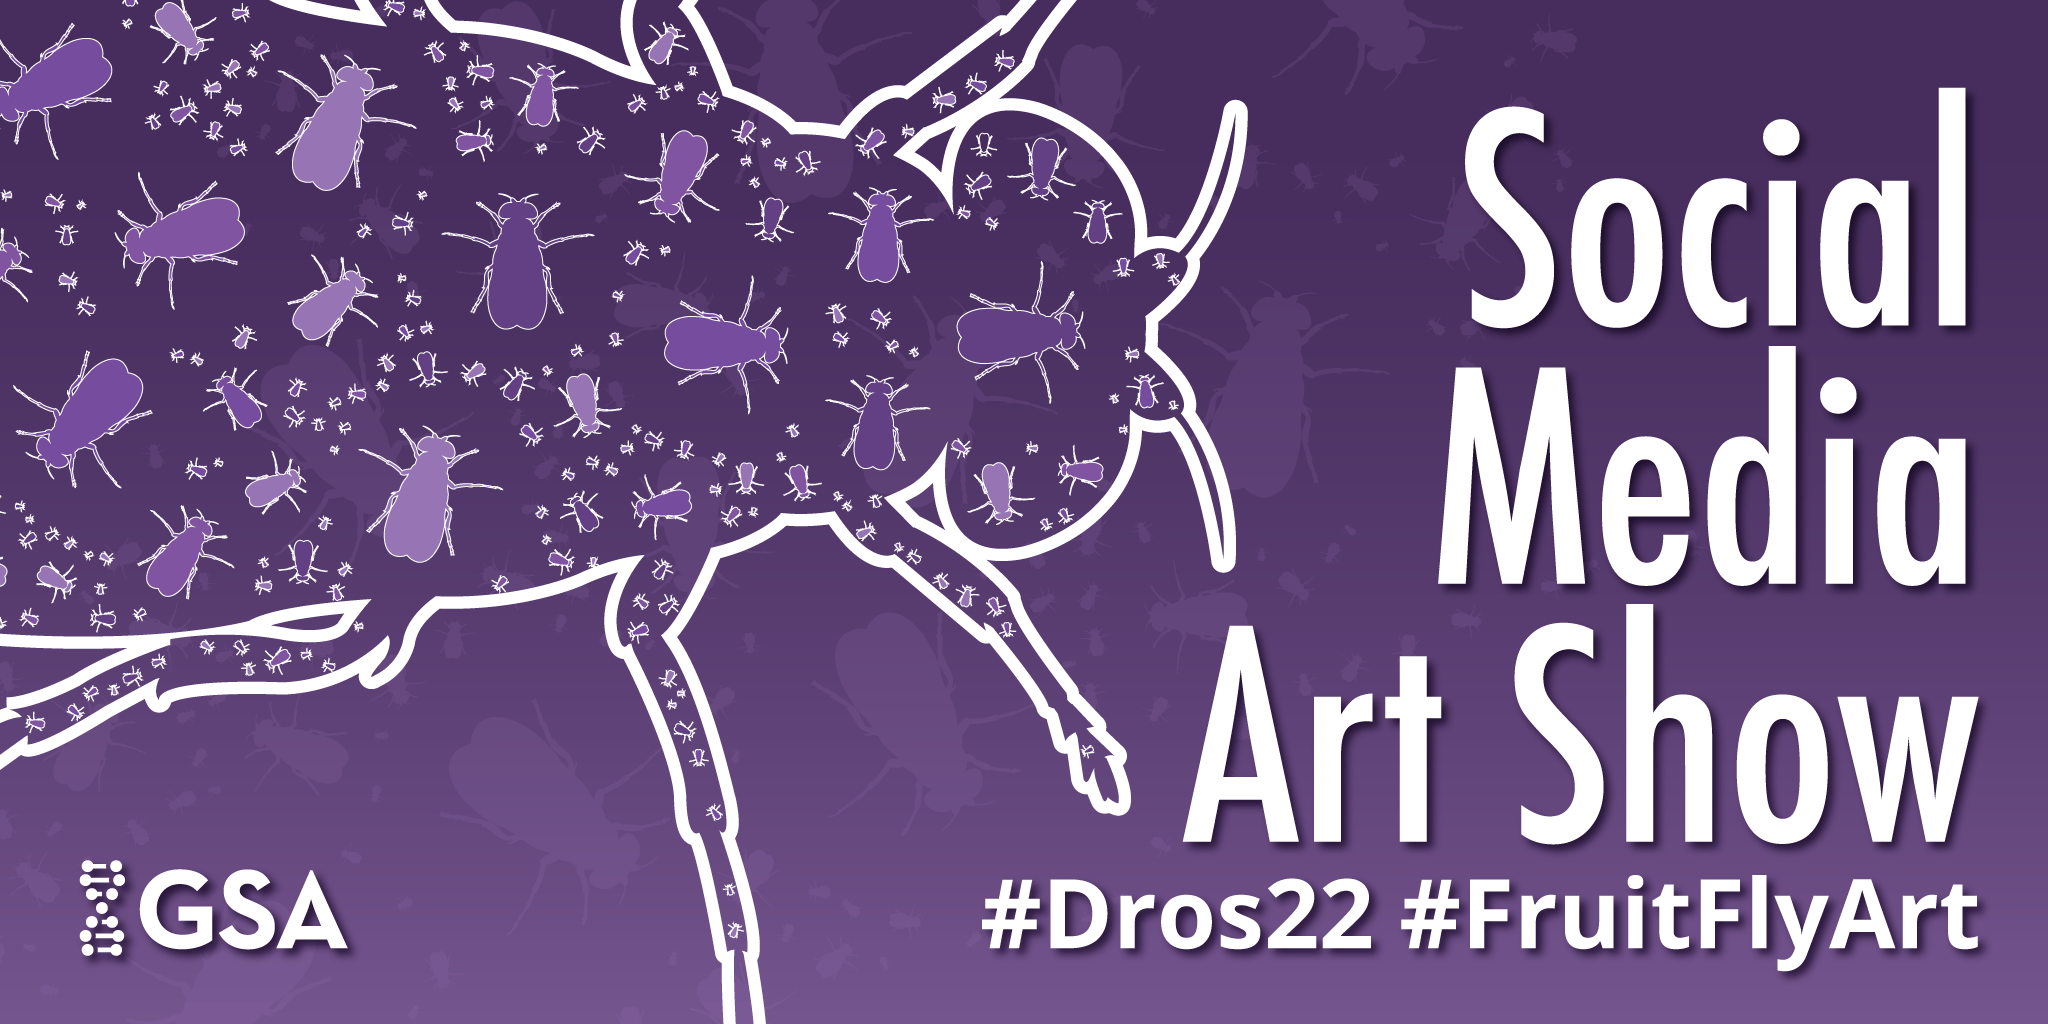 Dros22 FruitFlyArt Social Media Art Show